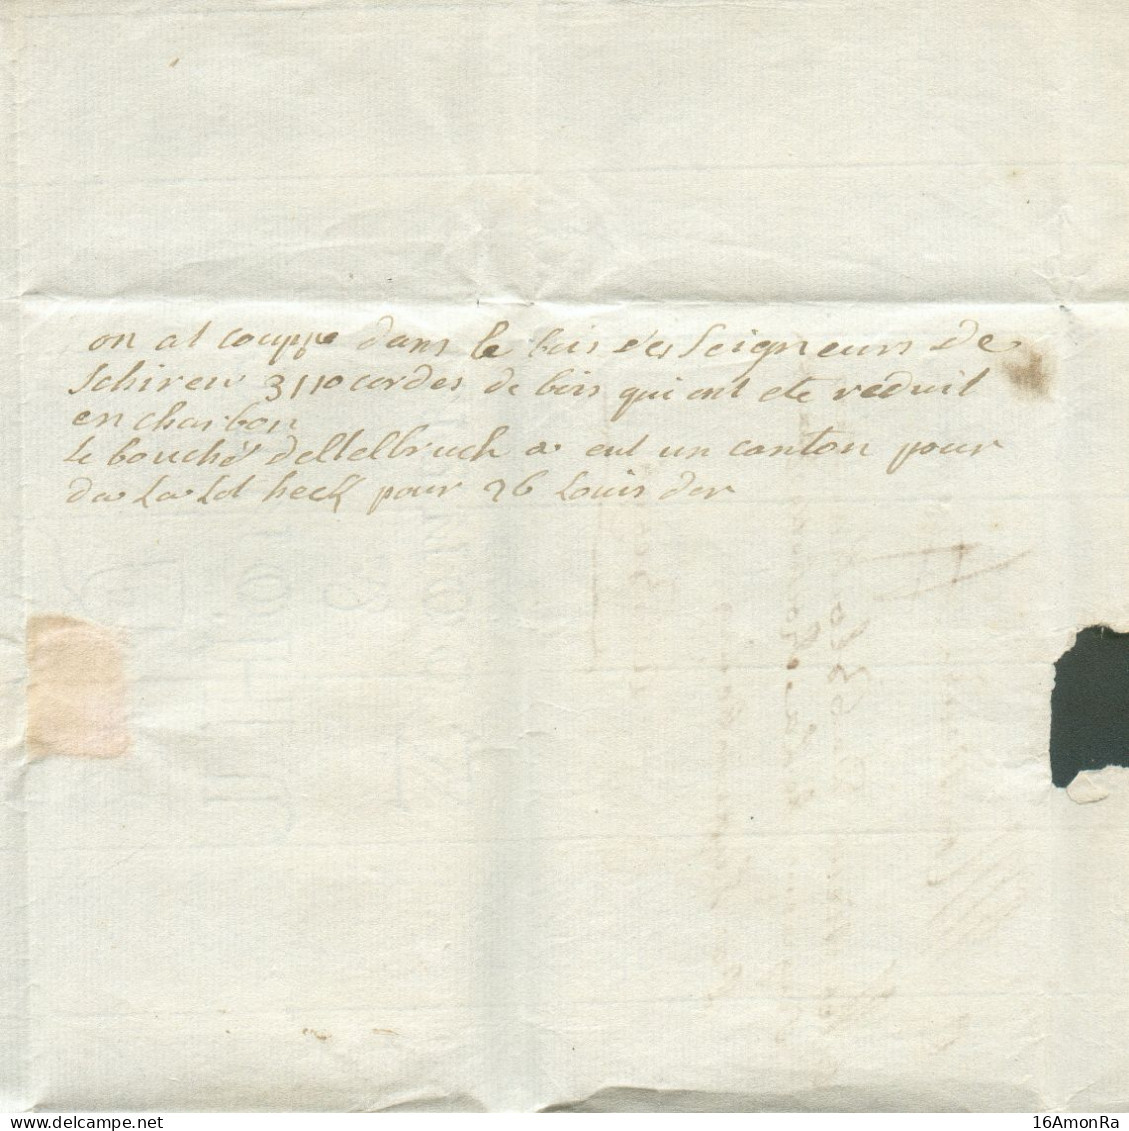 LAC (griffe Au Tampon) MALINES  Le 22 Juillet 1772 Vers Bergh (par Luxembourg); Port '4'. (biffé) -   Belle Fraîcheur. - 1714-1794 (Paises Bajos Austriacos)